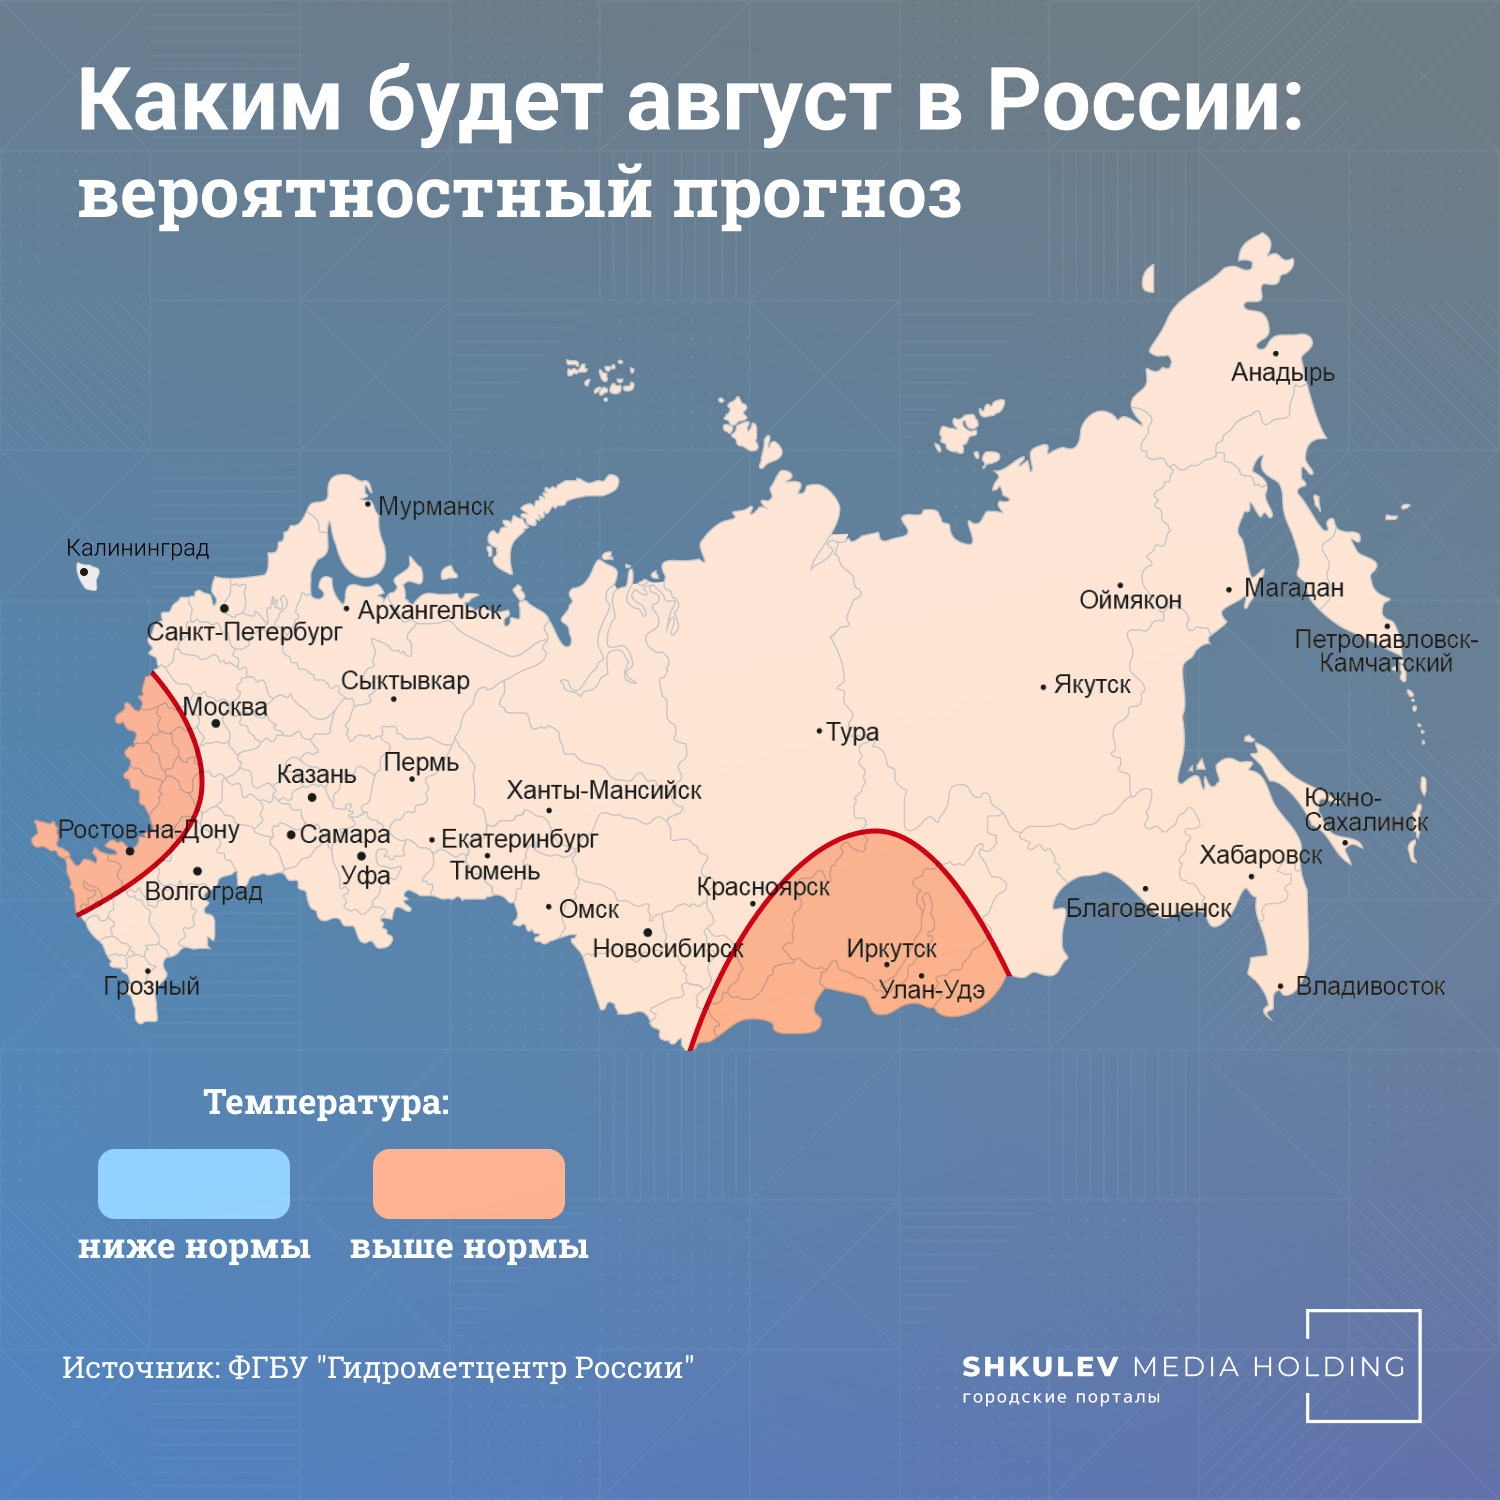 В августе температура в большинстве регионов России будет около нормы